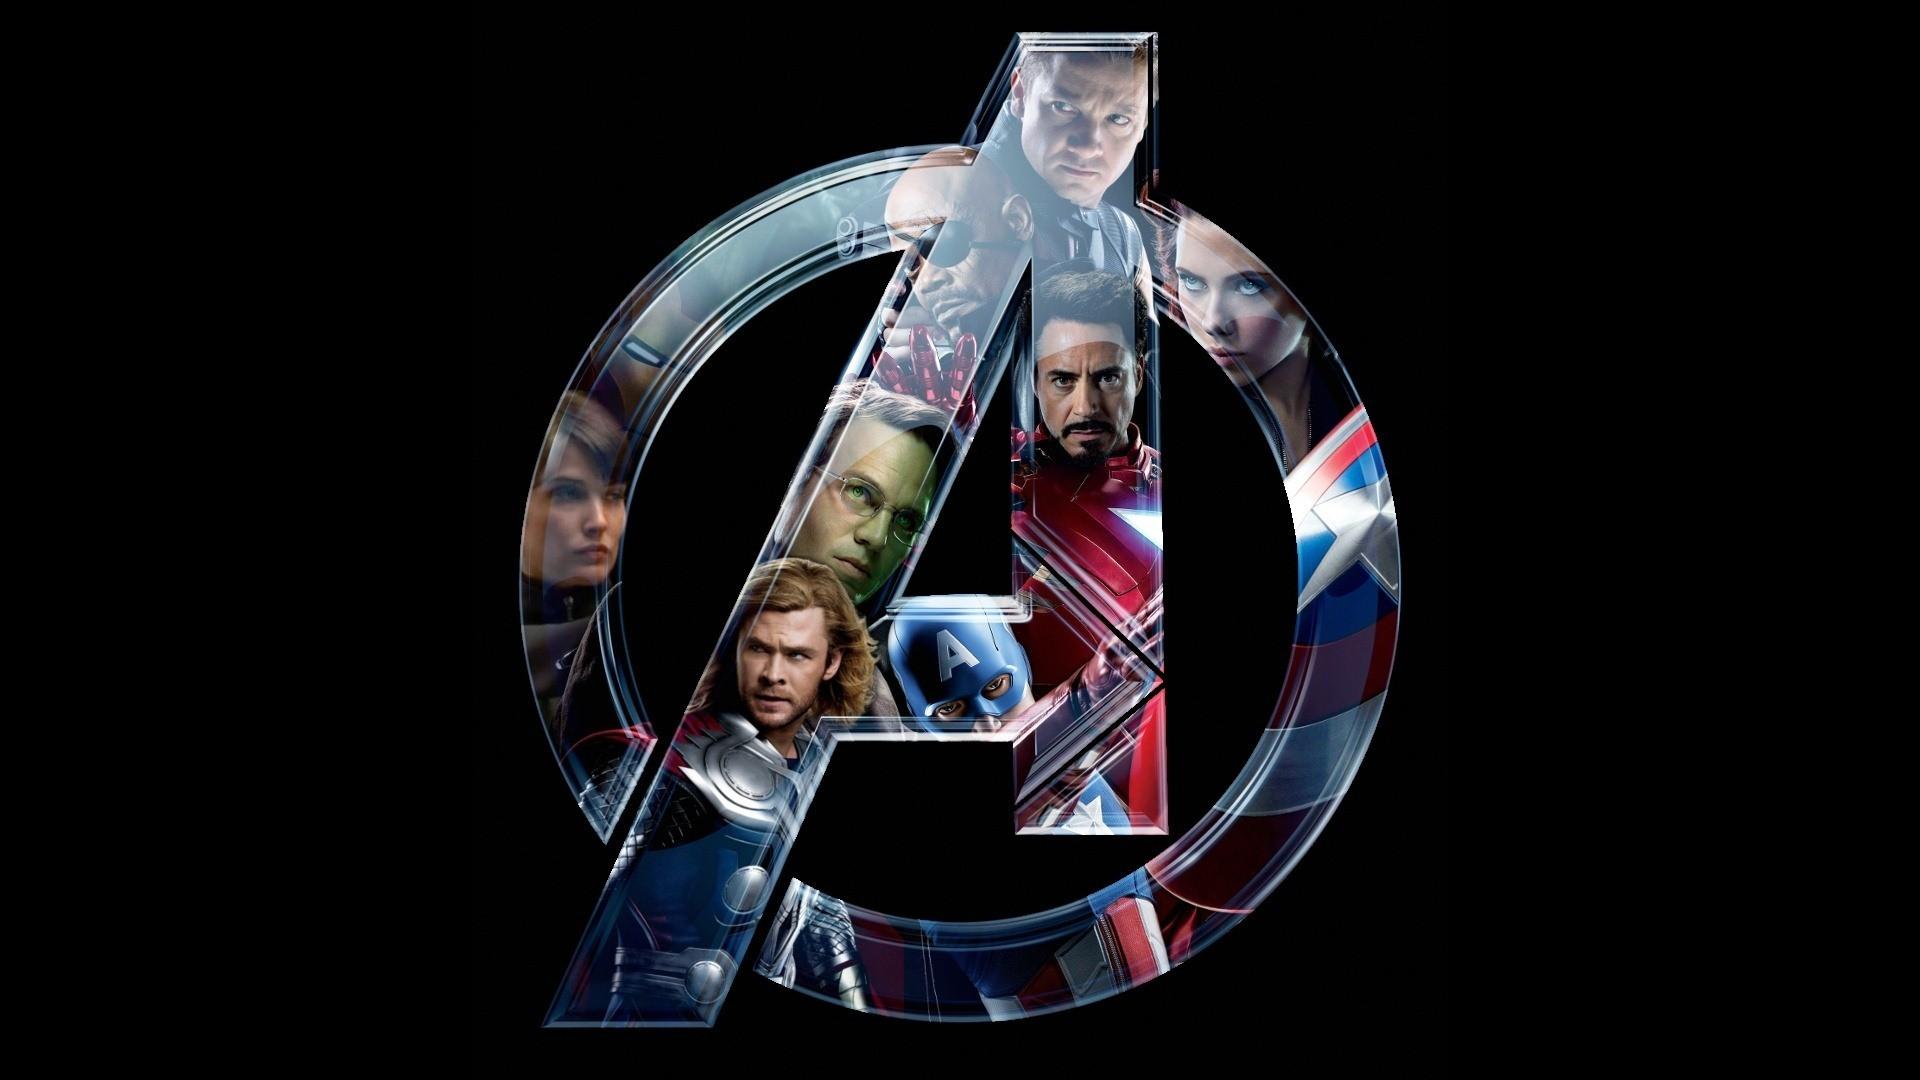 Avengers HD Wallpaper 1080p